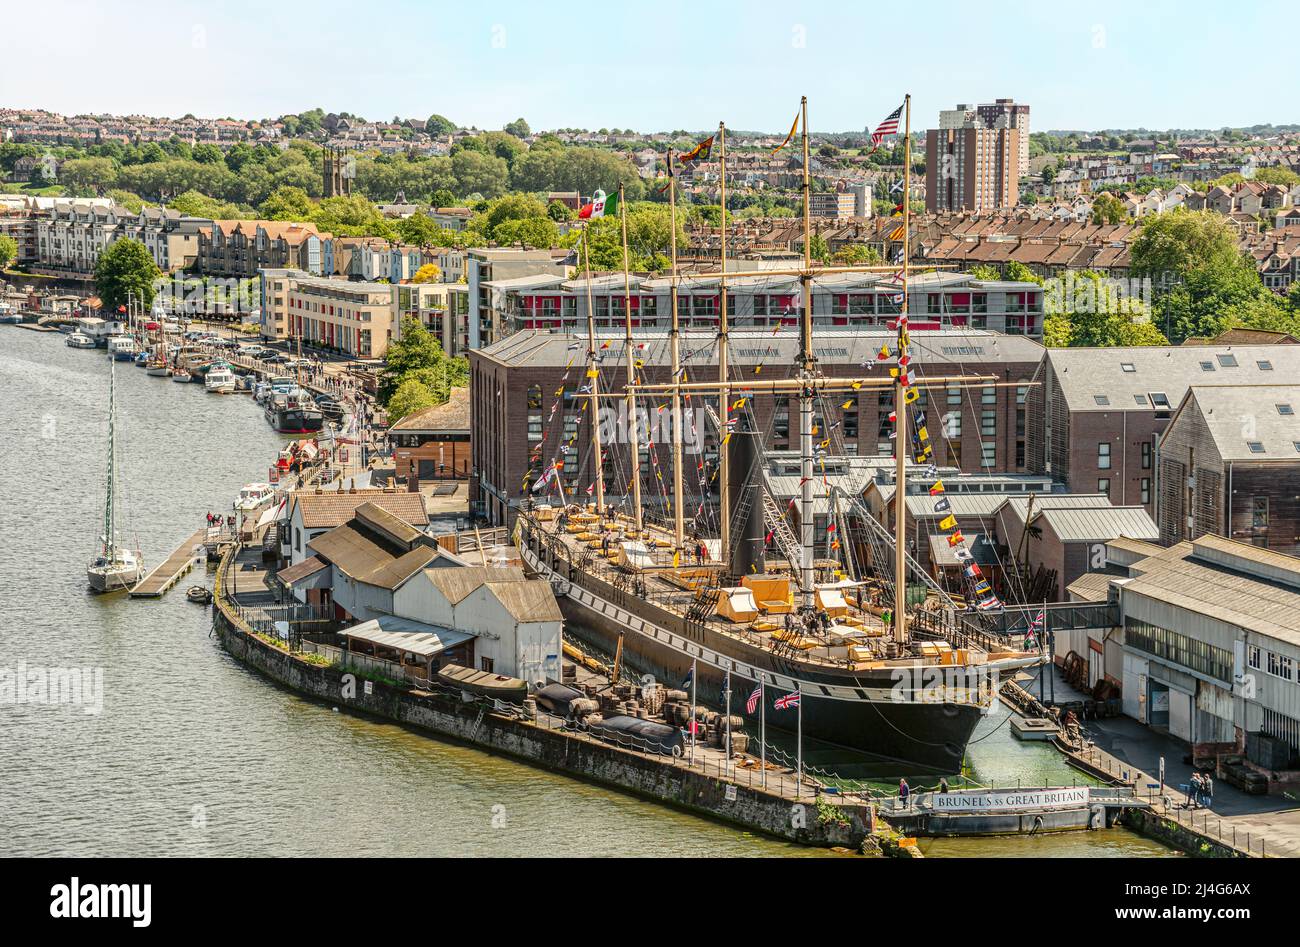 Brunels SS Great Britain est un bateau musée et ancien bateau à vapeur à passagers le port de Bristol, Somerset, England, UK Banque D'Images